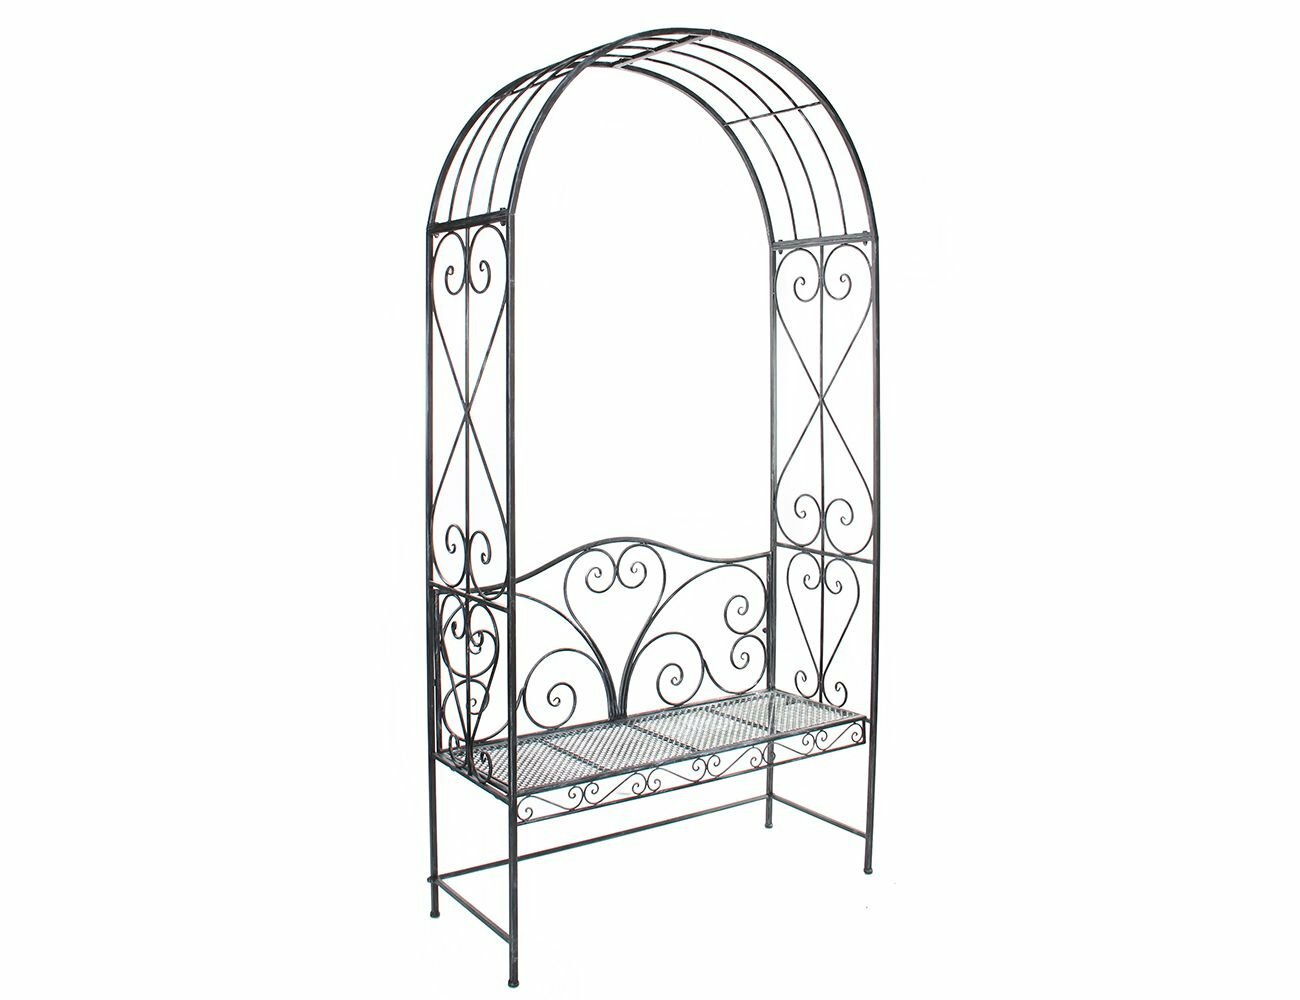 Садовая скамейка с аркой для растений ажурный прованс, металлическая, 116х230 см, Edelman